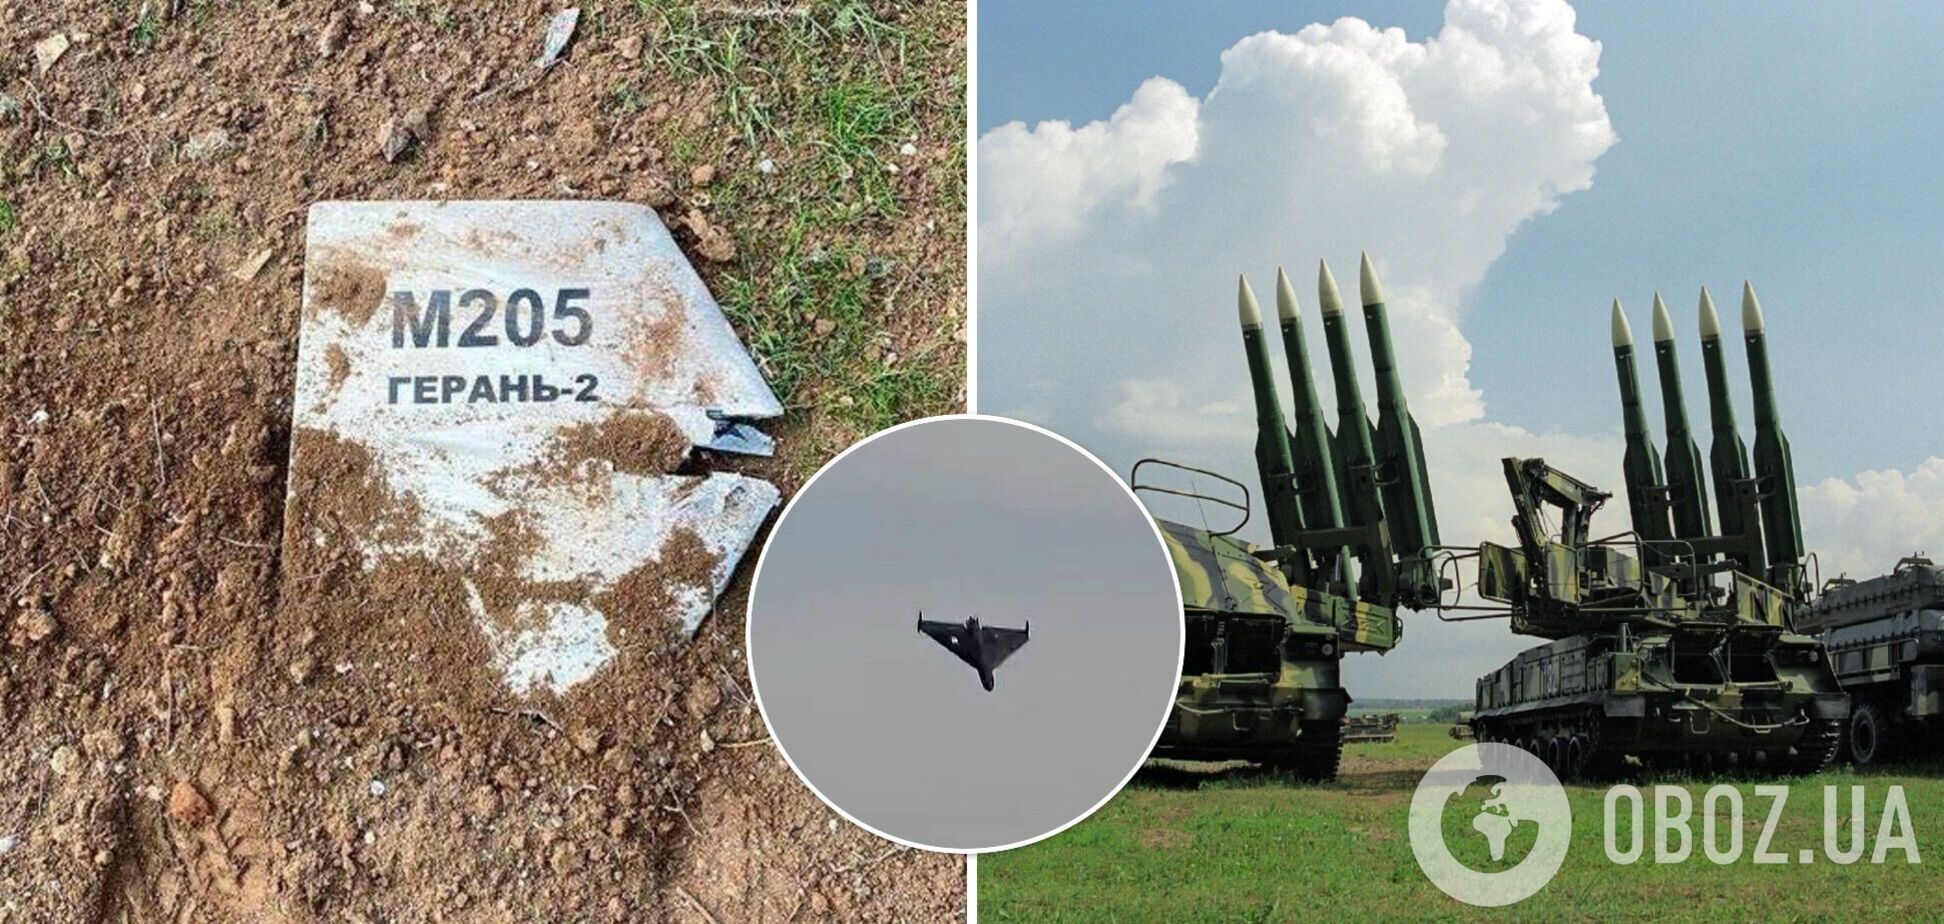 Силы ПВО сбили три вражеских дрона Shahed-136 в небе над Херсонщиной и Днепропетровщиной